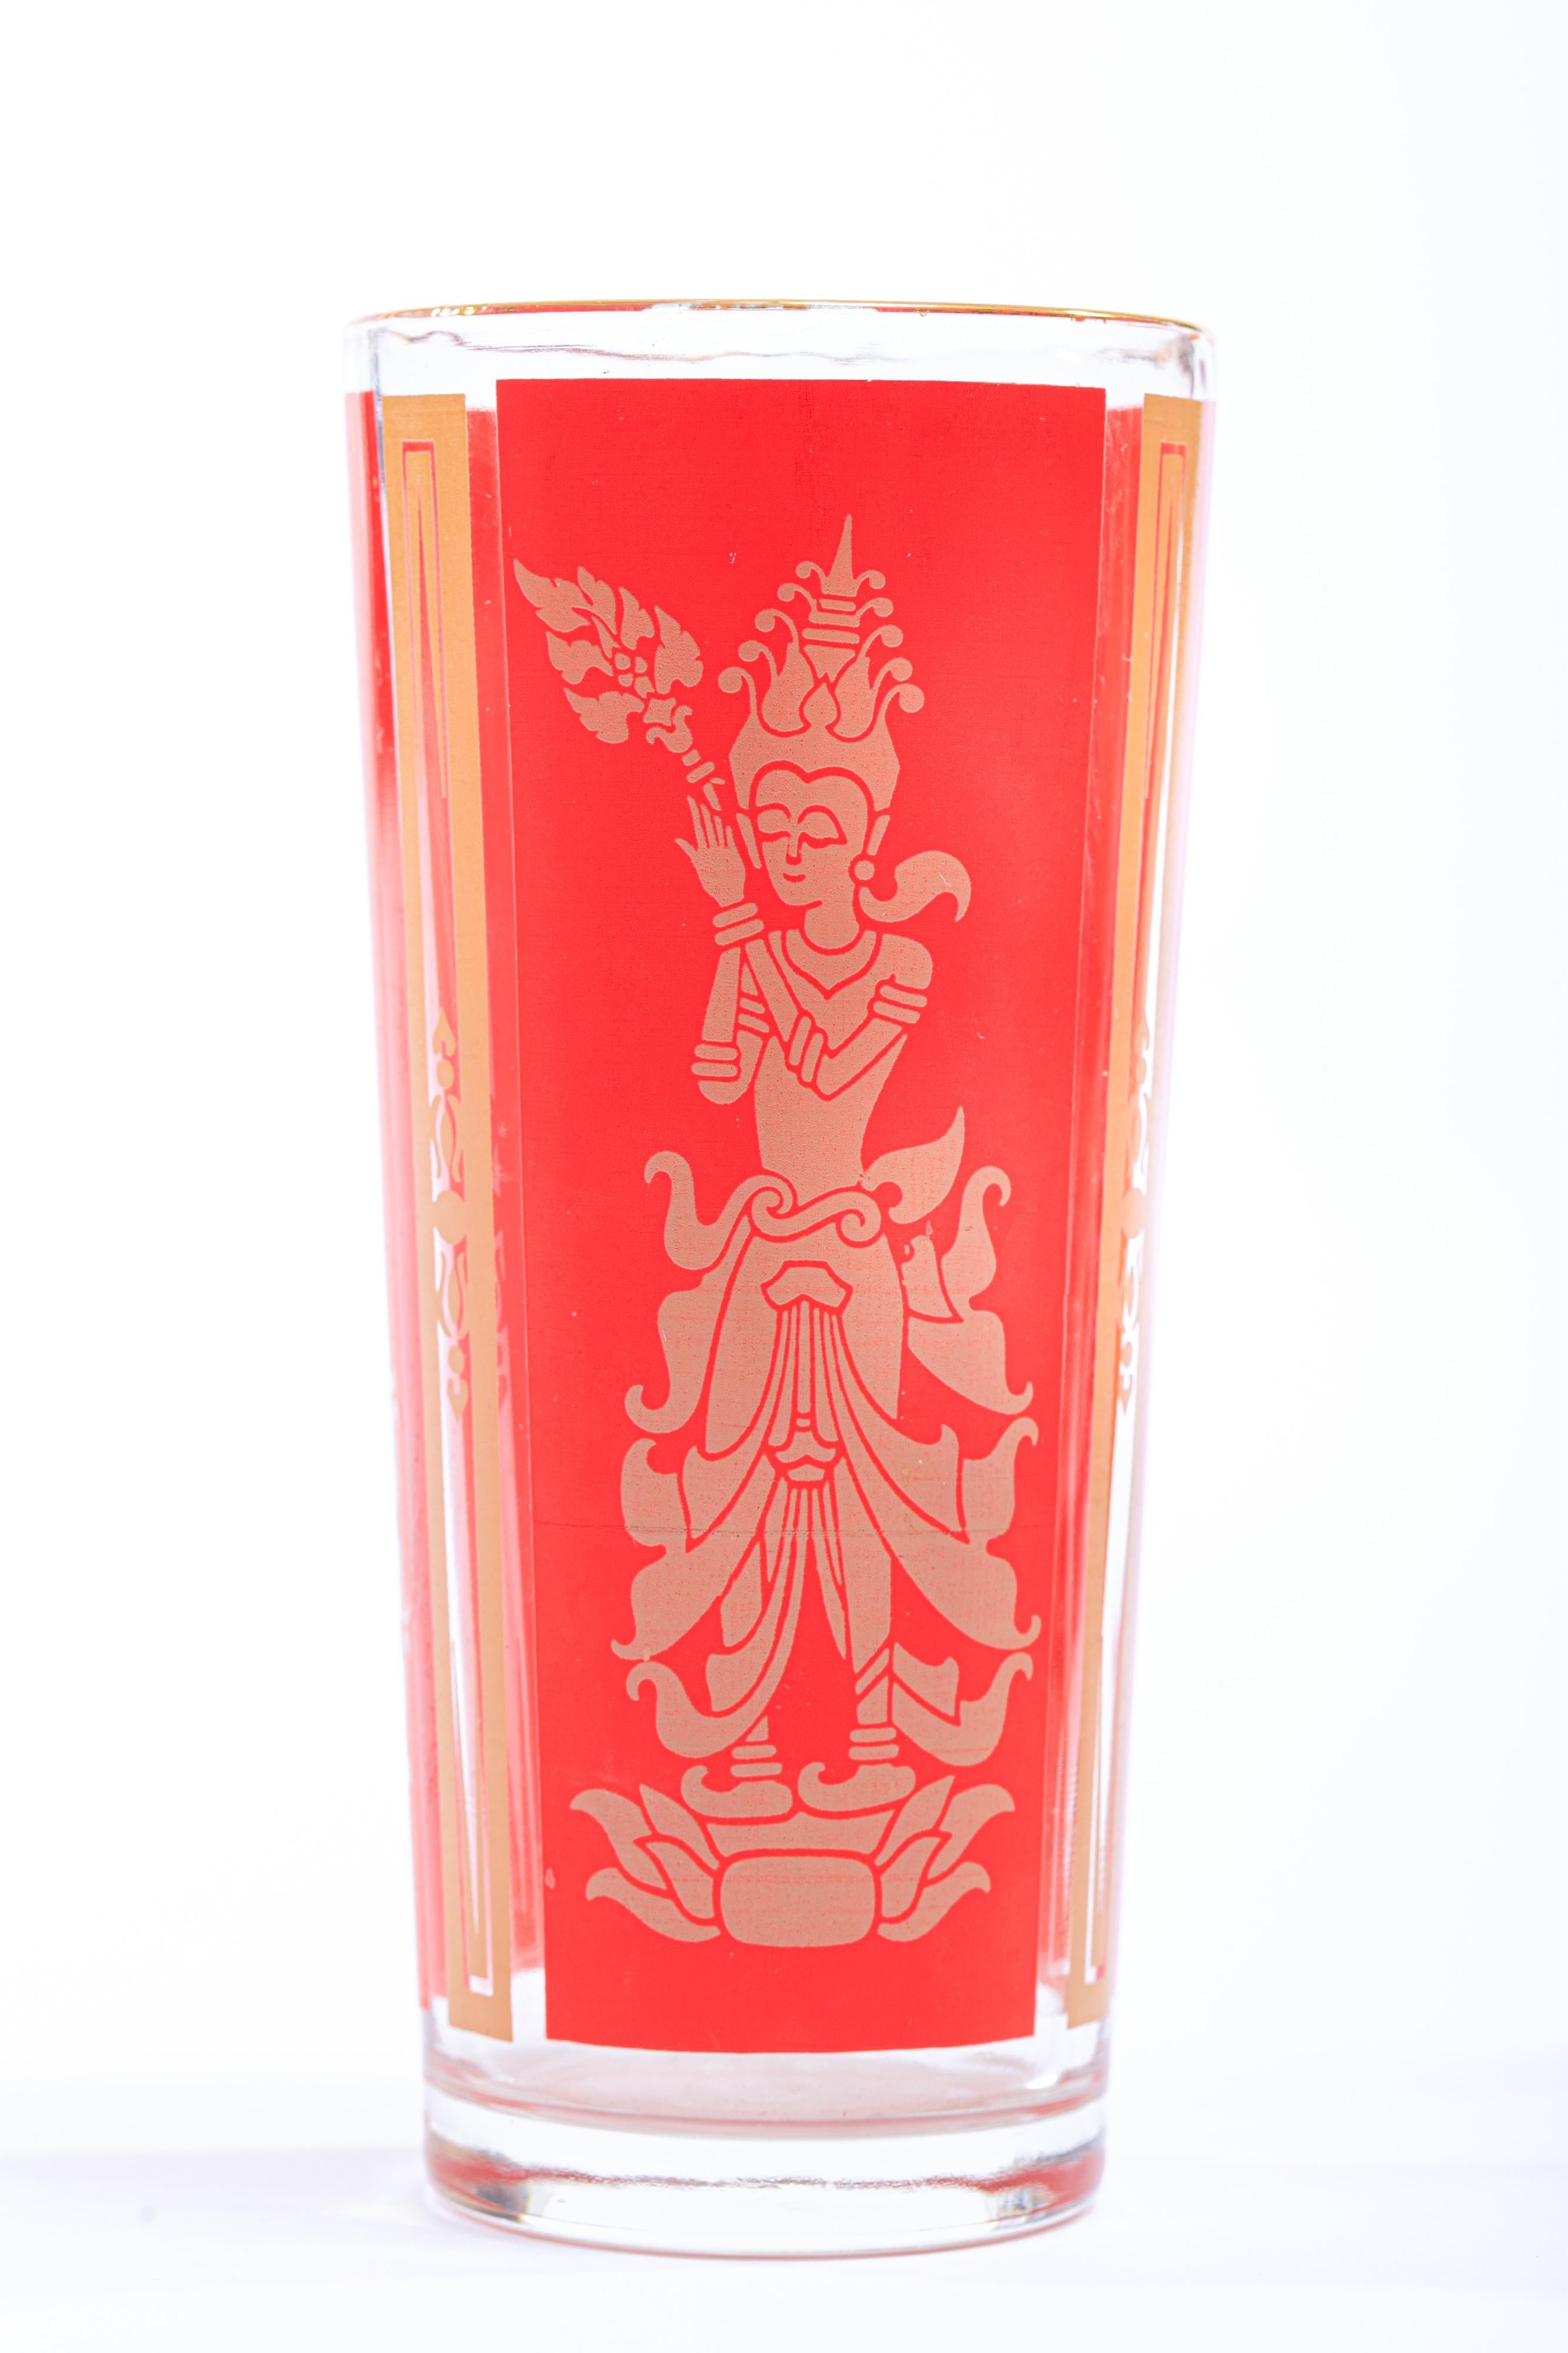 Diese schicken Vintage-Cocktailbecher mit goldenen Rändern sind in ausgezeichnetem Originalzustand und zeigen eine thailändische Prinzessin in Beige vor einem traditionellen chinesischen roten Hintergrund. Perfekter Akzent für asiatisches oder